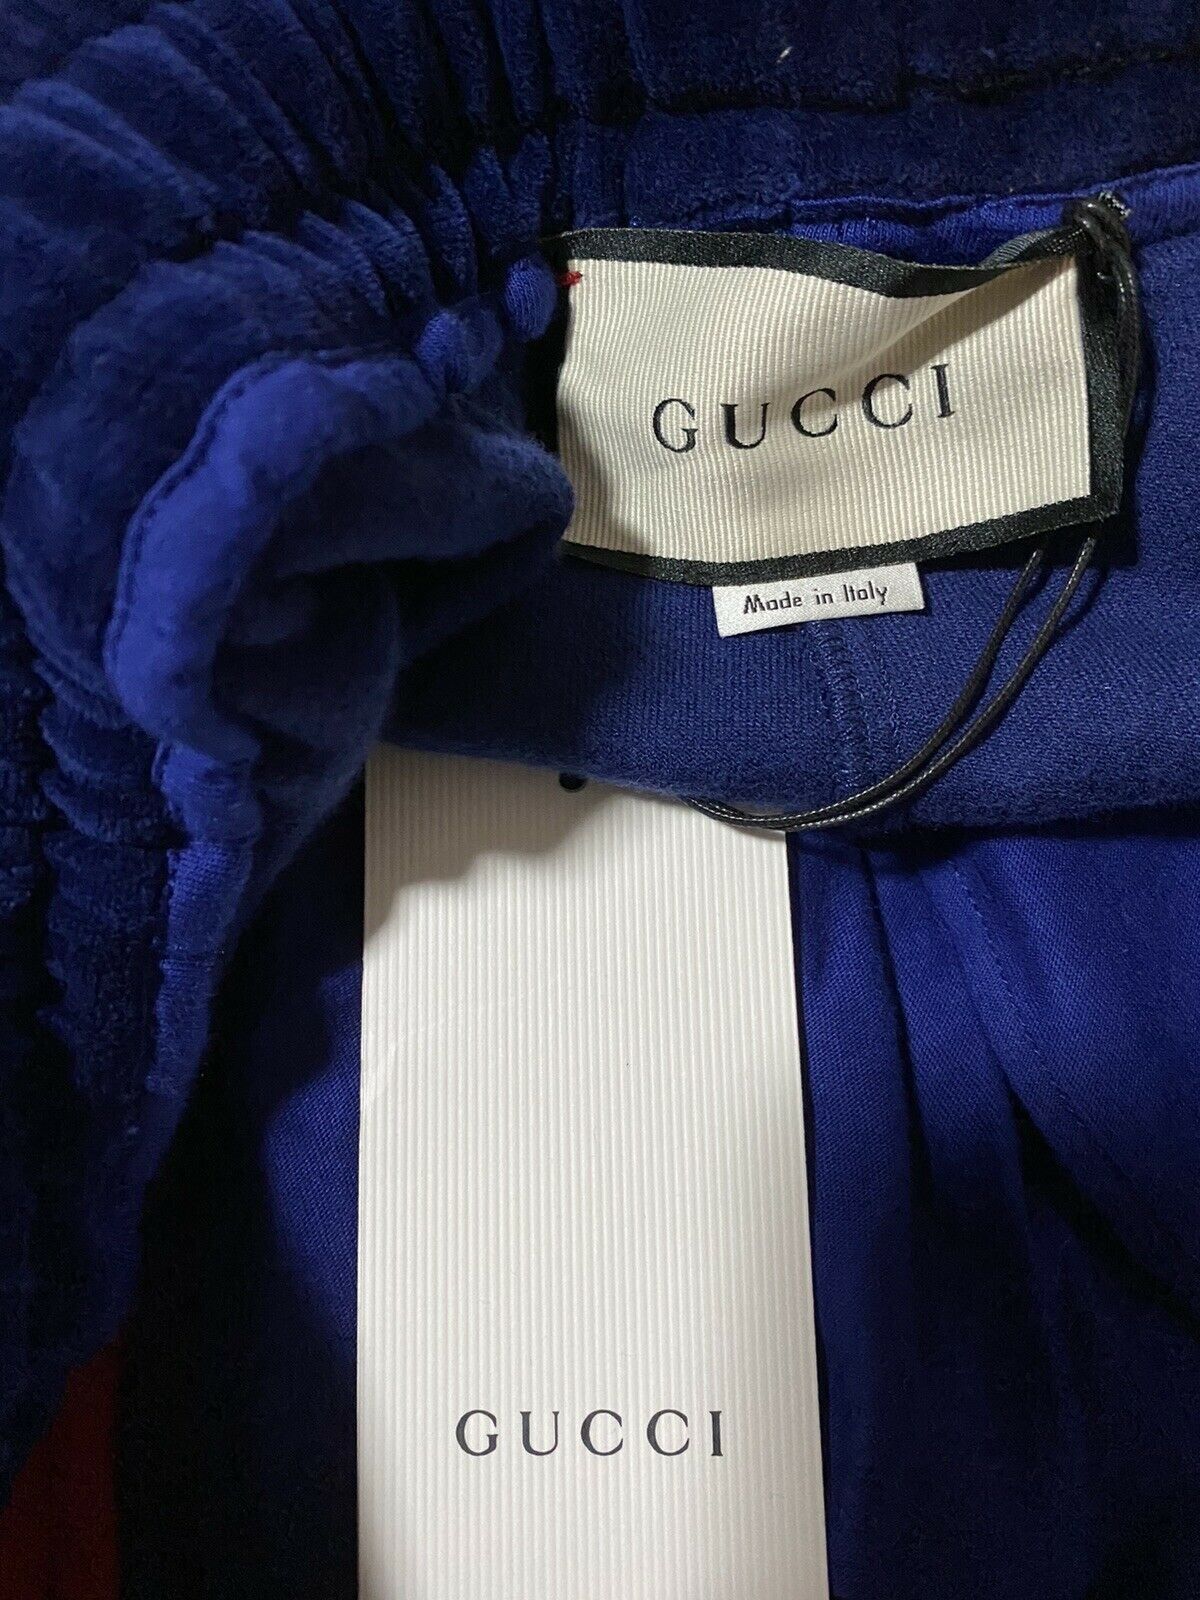 Neu mit Etikett: 1480 $ Gucci Herren-Trainingshose, Blau, Größe XXXL, hergestellt in Italien